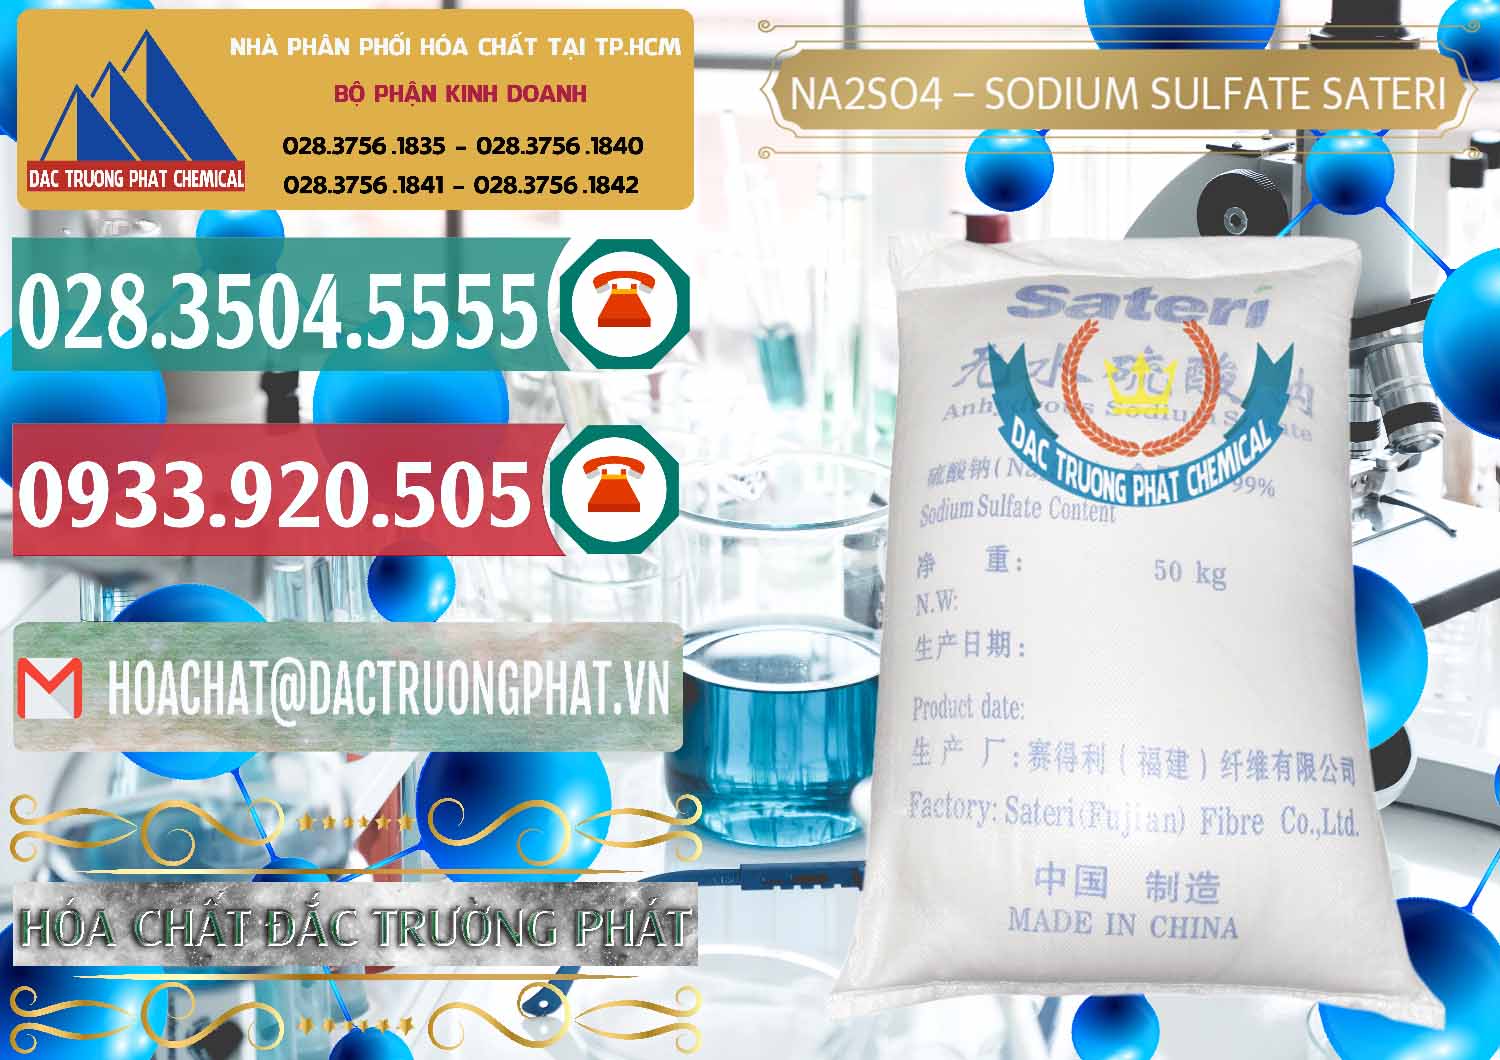 Công ty chuyên bán _ phân phối Sodium Sulphate - Muối Sunfat Na2SO4 Sateri Trung Quốc China - 0100 - Cty chuyên bán ( phân phối ) hóa chất tại TP.HCM - muabanhoachat.vn